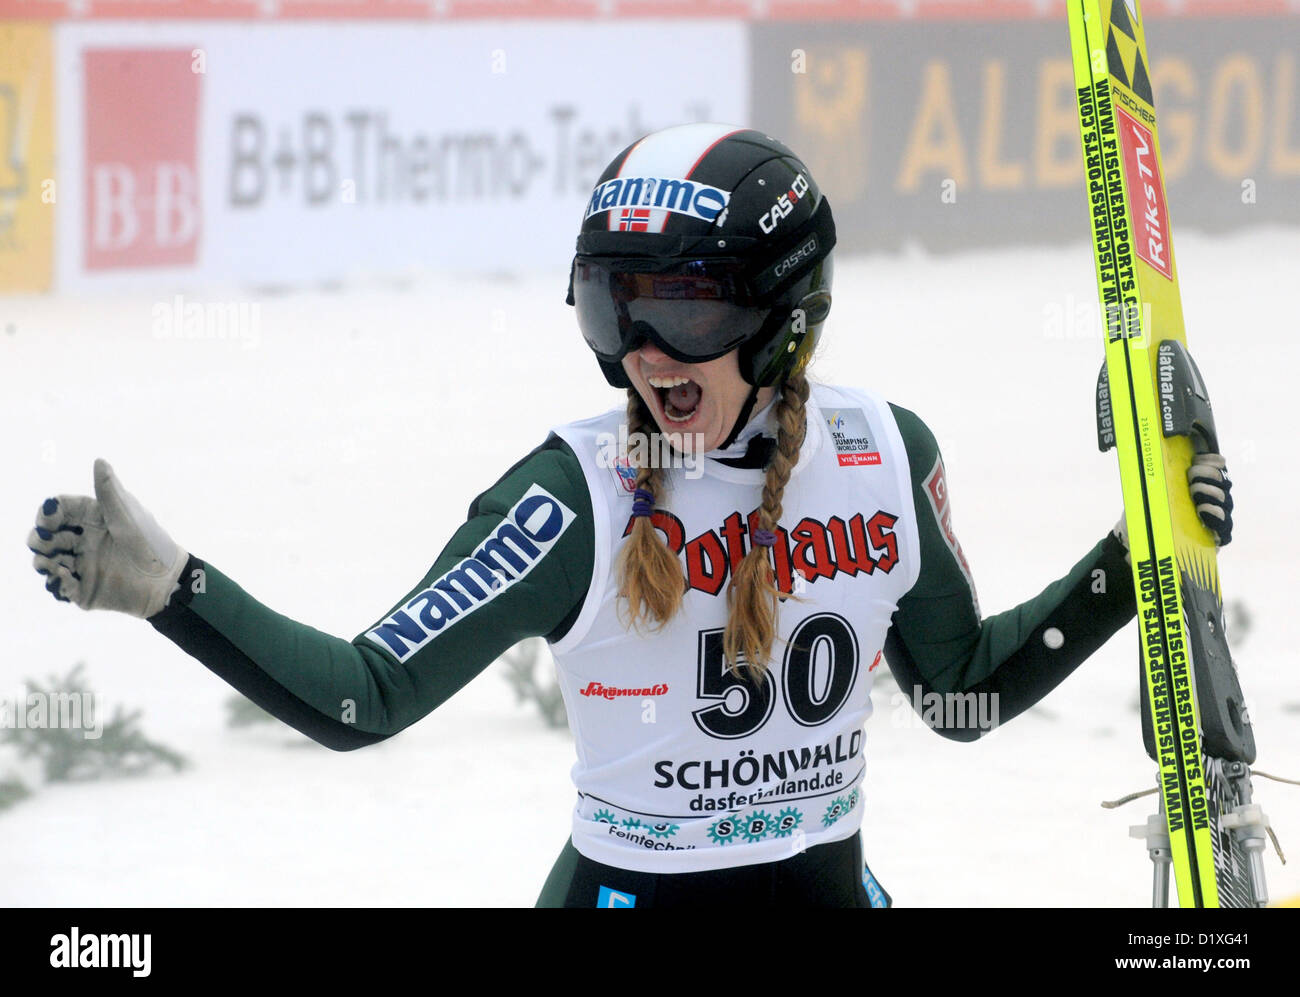 Norvegese ponticello sci Anette Sagen cheers alla linea di finitura dal Langenwaldschanze delle donne ski-jumping di Coppa del Mondo a Schonach, Germania, 06 gennaio 2013. Ha vinto il primo posto. Foto: Patrick Seeger/dpa Foto Stock